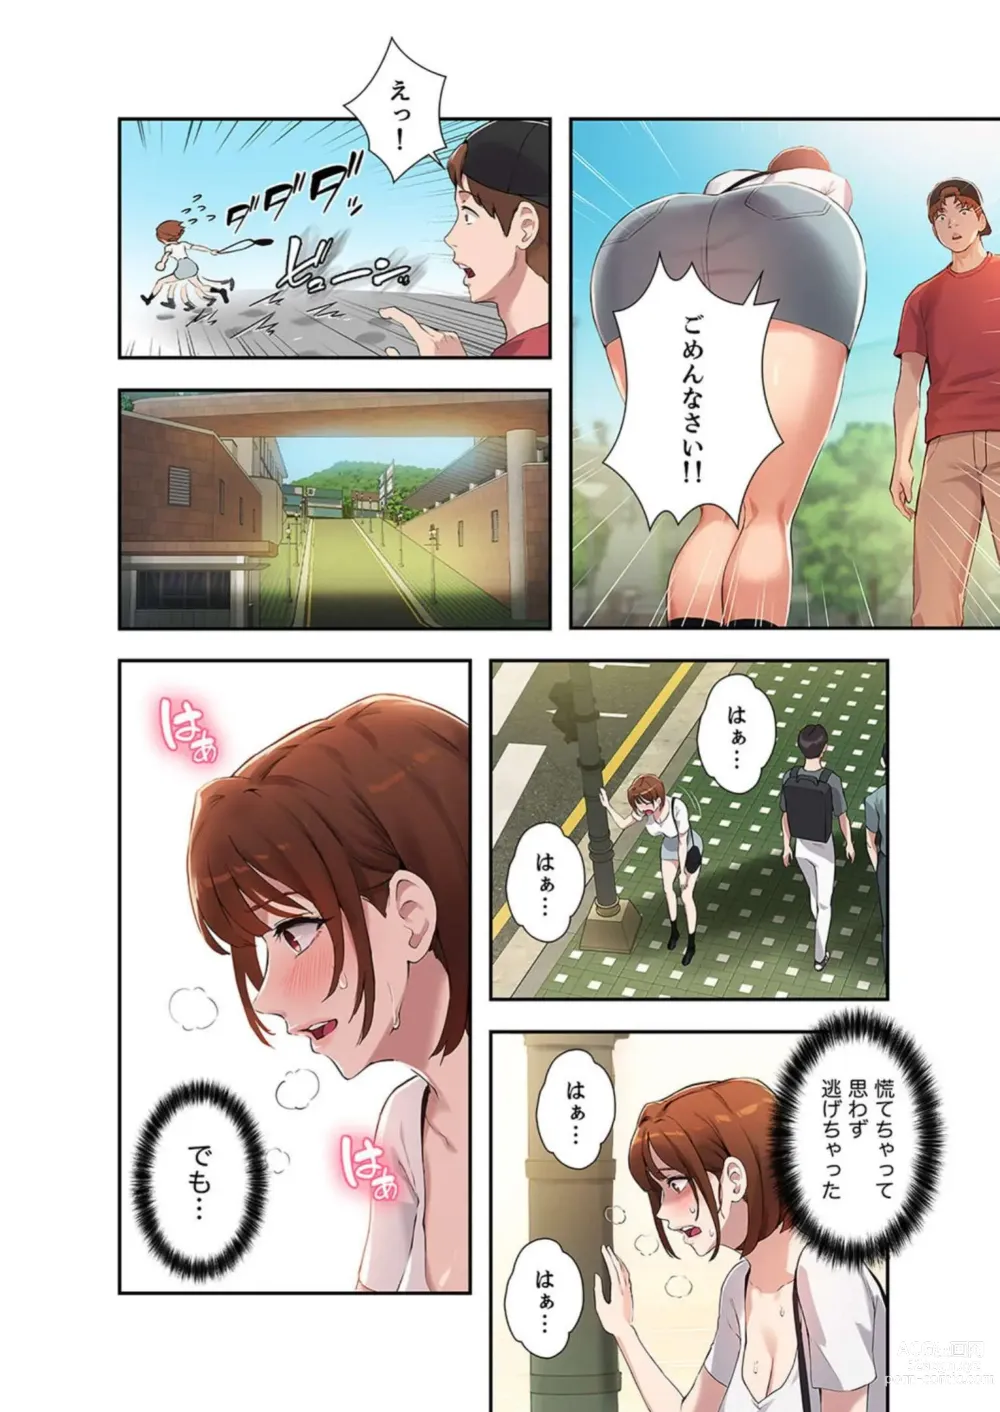 Page 124 of manga Hatachi 02